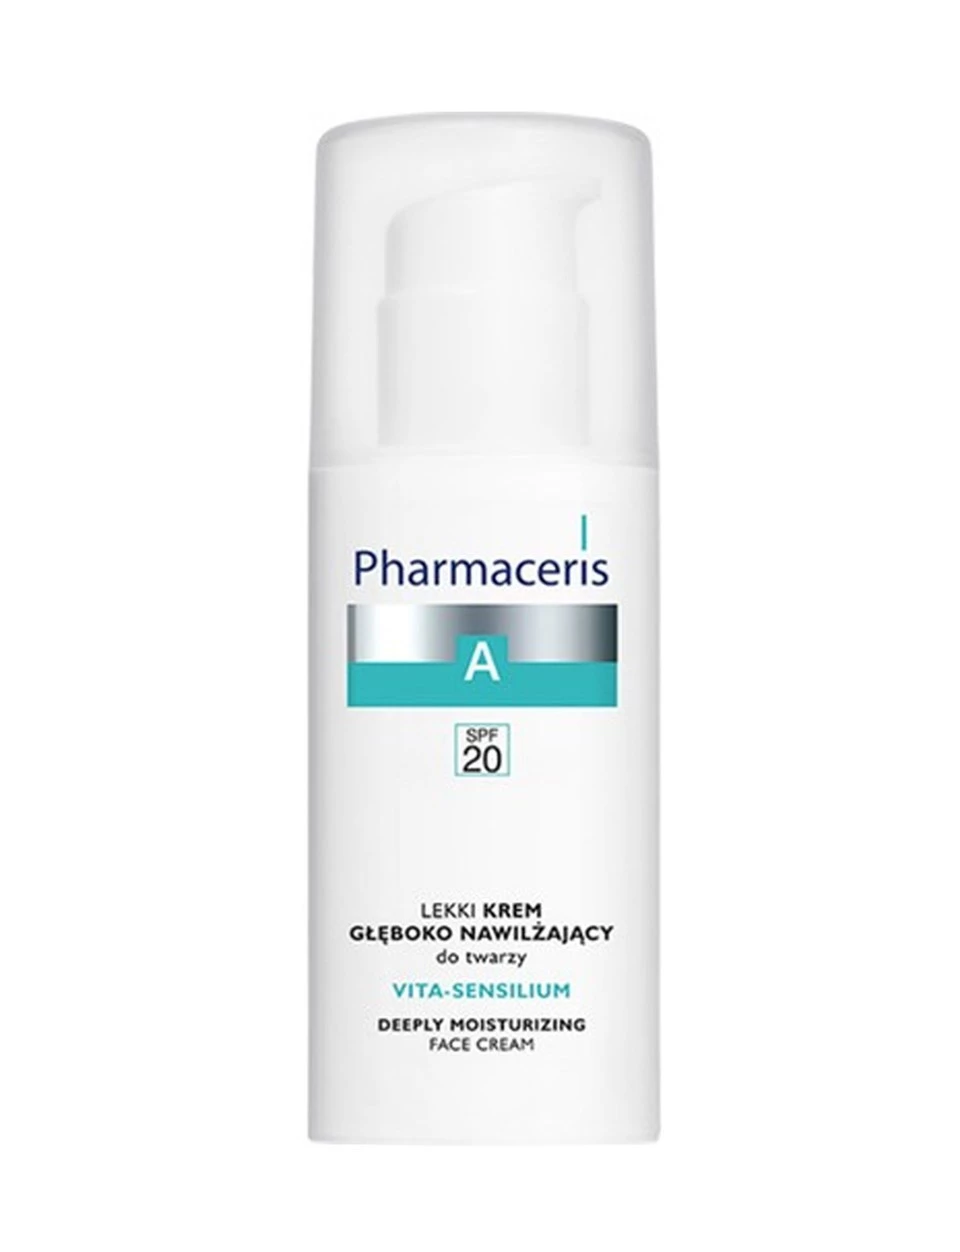 Pharmaceris A - Vita - Sensilium Face Cream Spf20 - 50ml